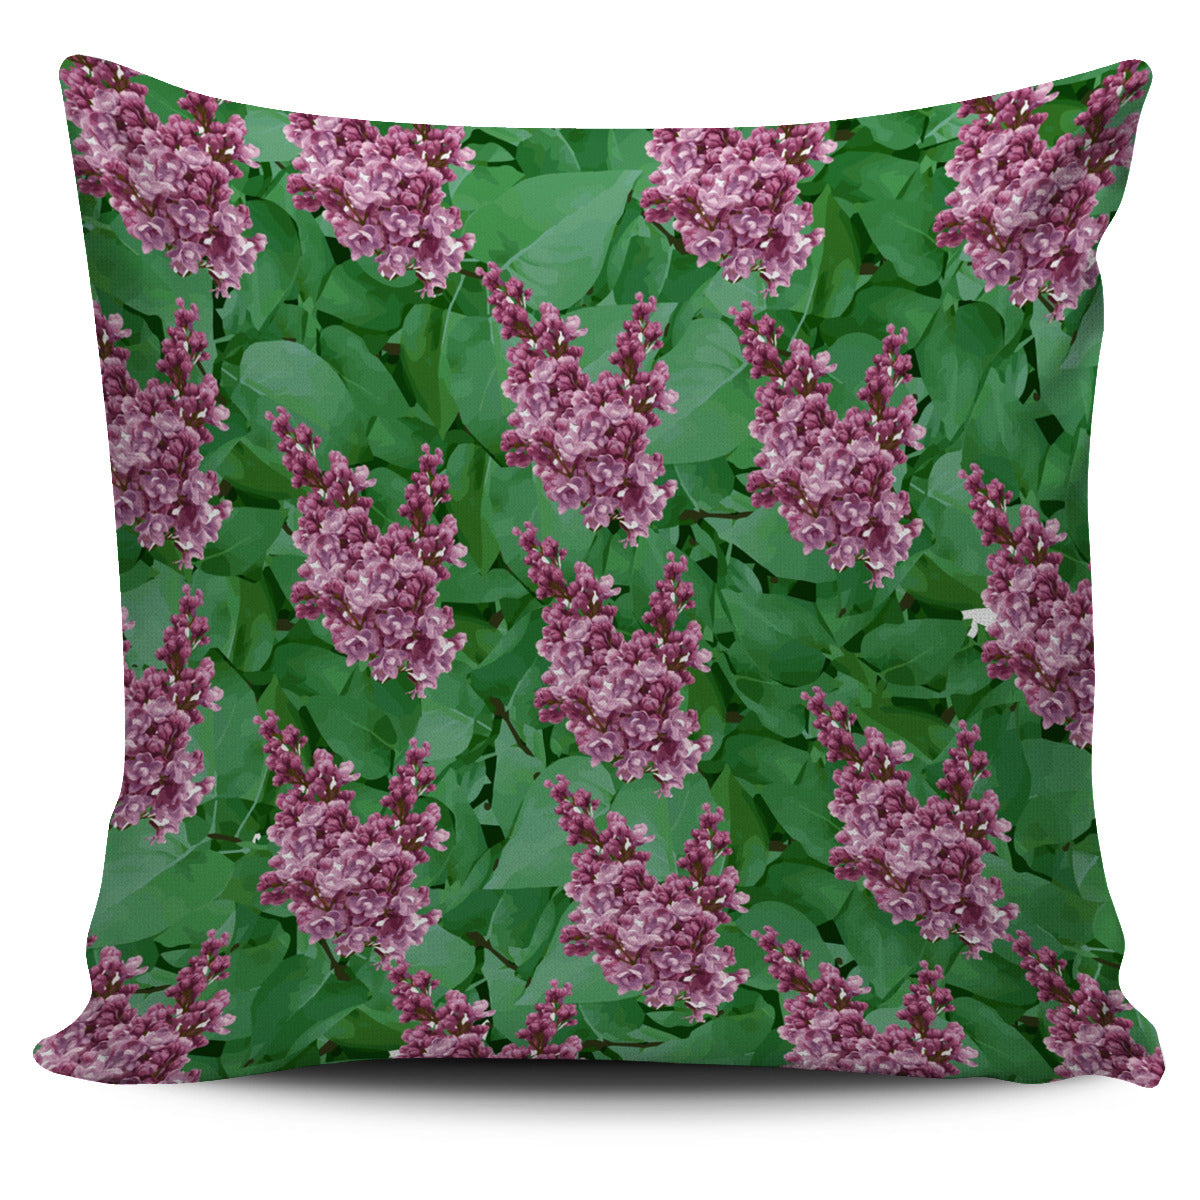 Lilac Garden Pillow Cover